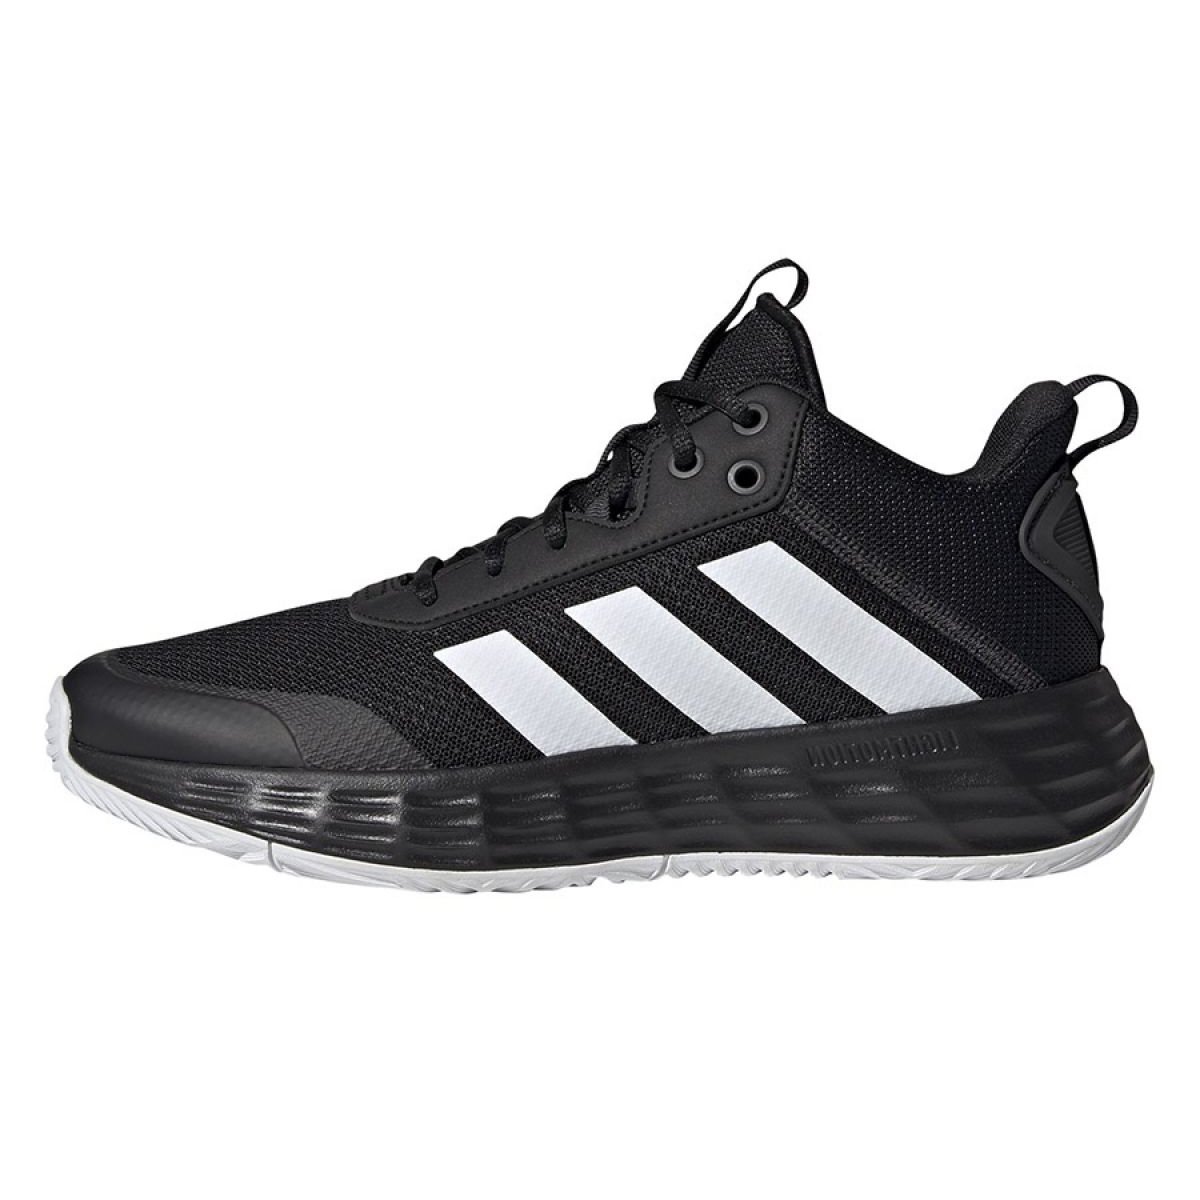 Buty do koszykówki adidas Ownthegame 2.0 M H00470 wielokolorowe czarne